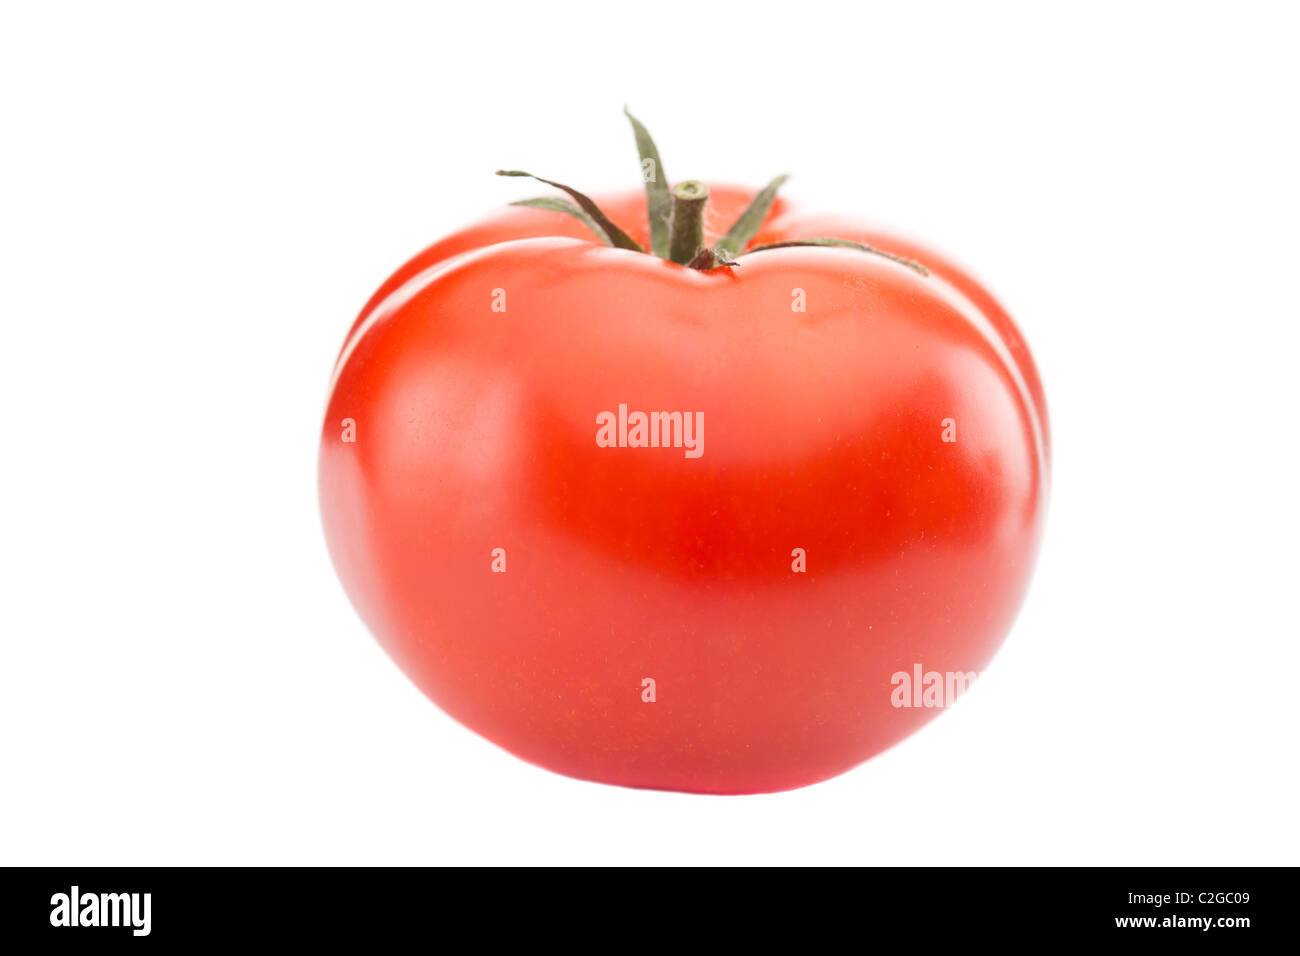 Frais rouge juteuse tomate mûrie de vigne Banque D'Images